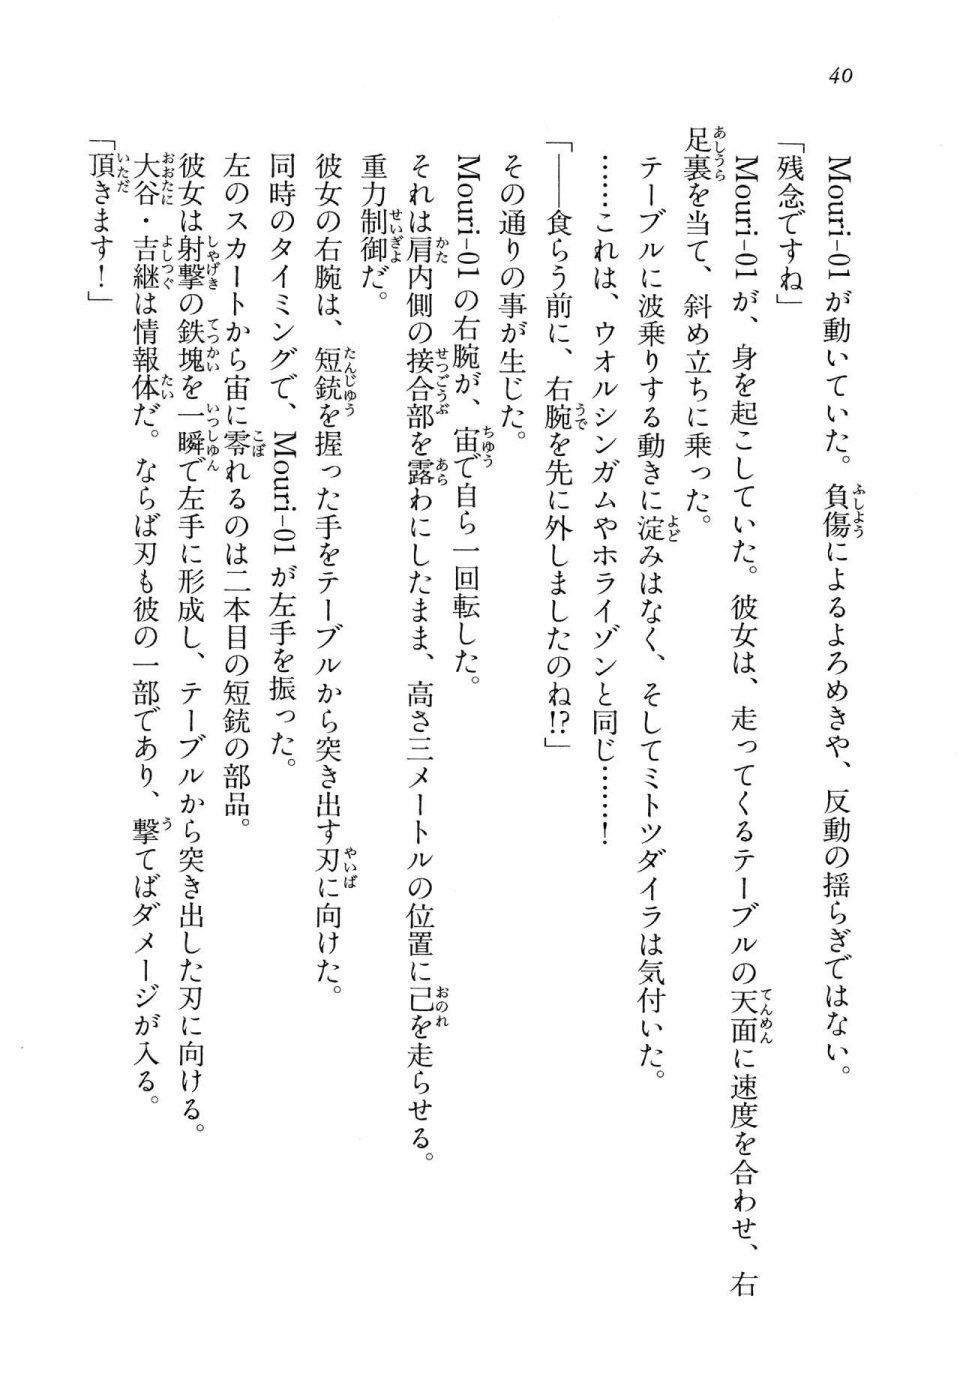 Kyoukai Senjou no Horizon LN Vol 14(6B) - Photo #40